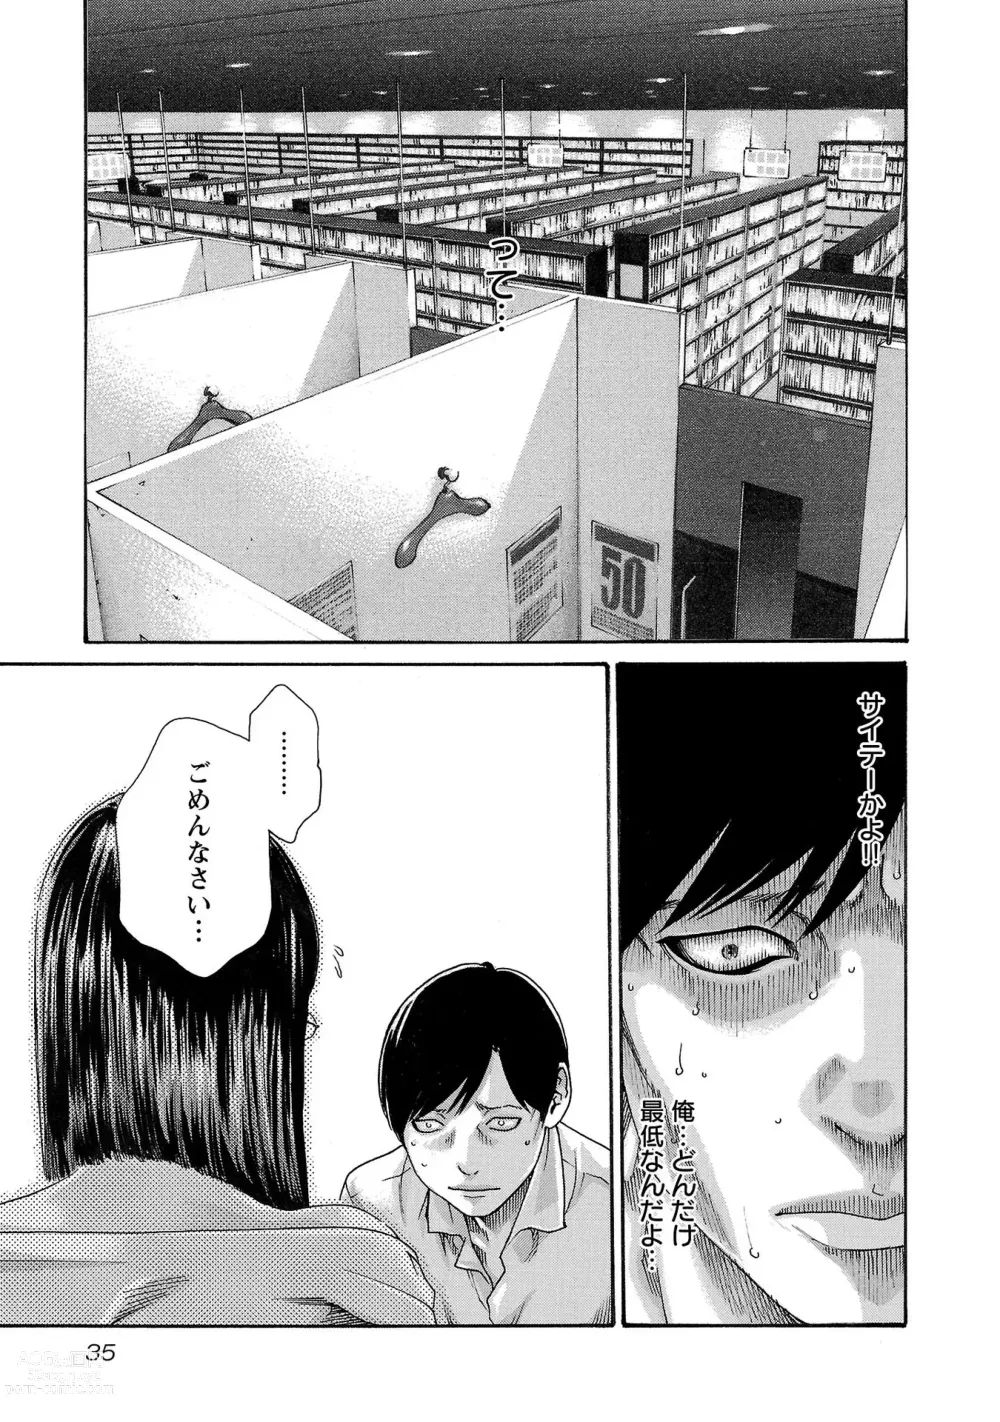 Page 36 of manga sense volume 13